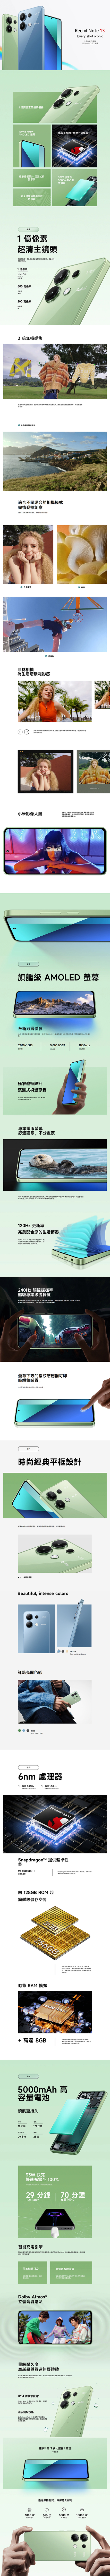 Xiaomi Redmi Note 13 4G